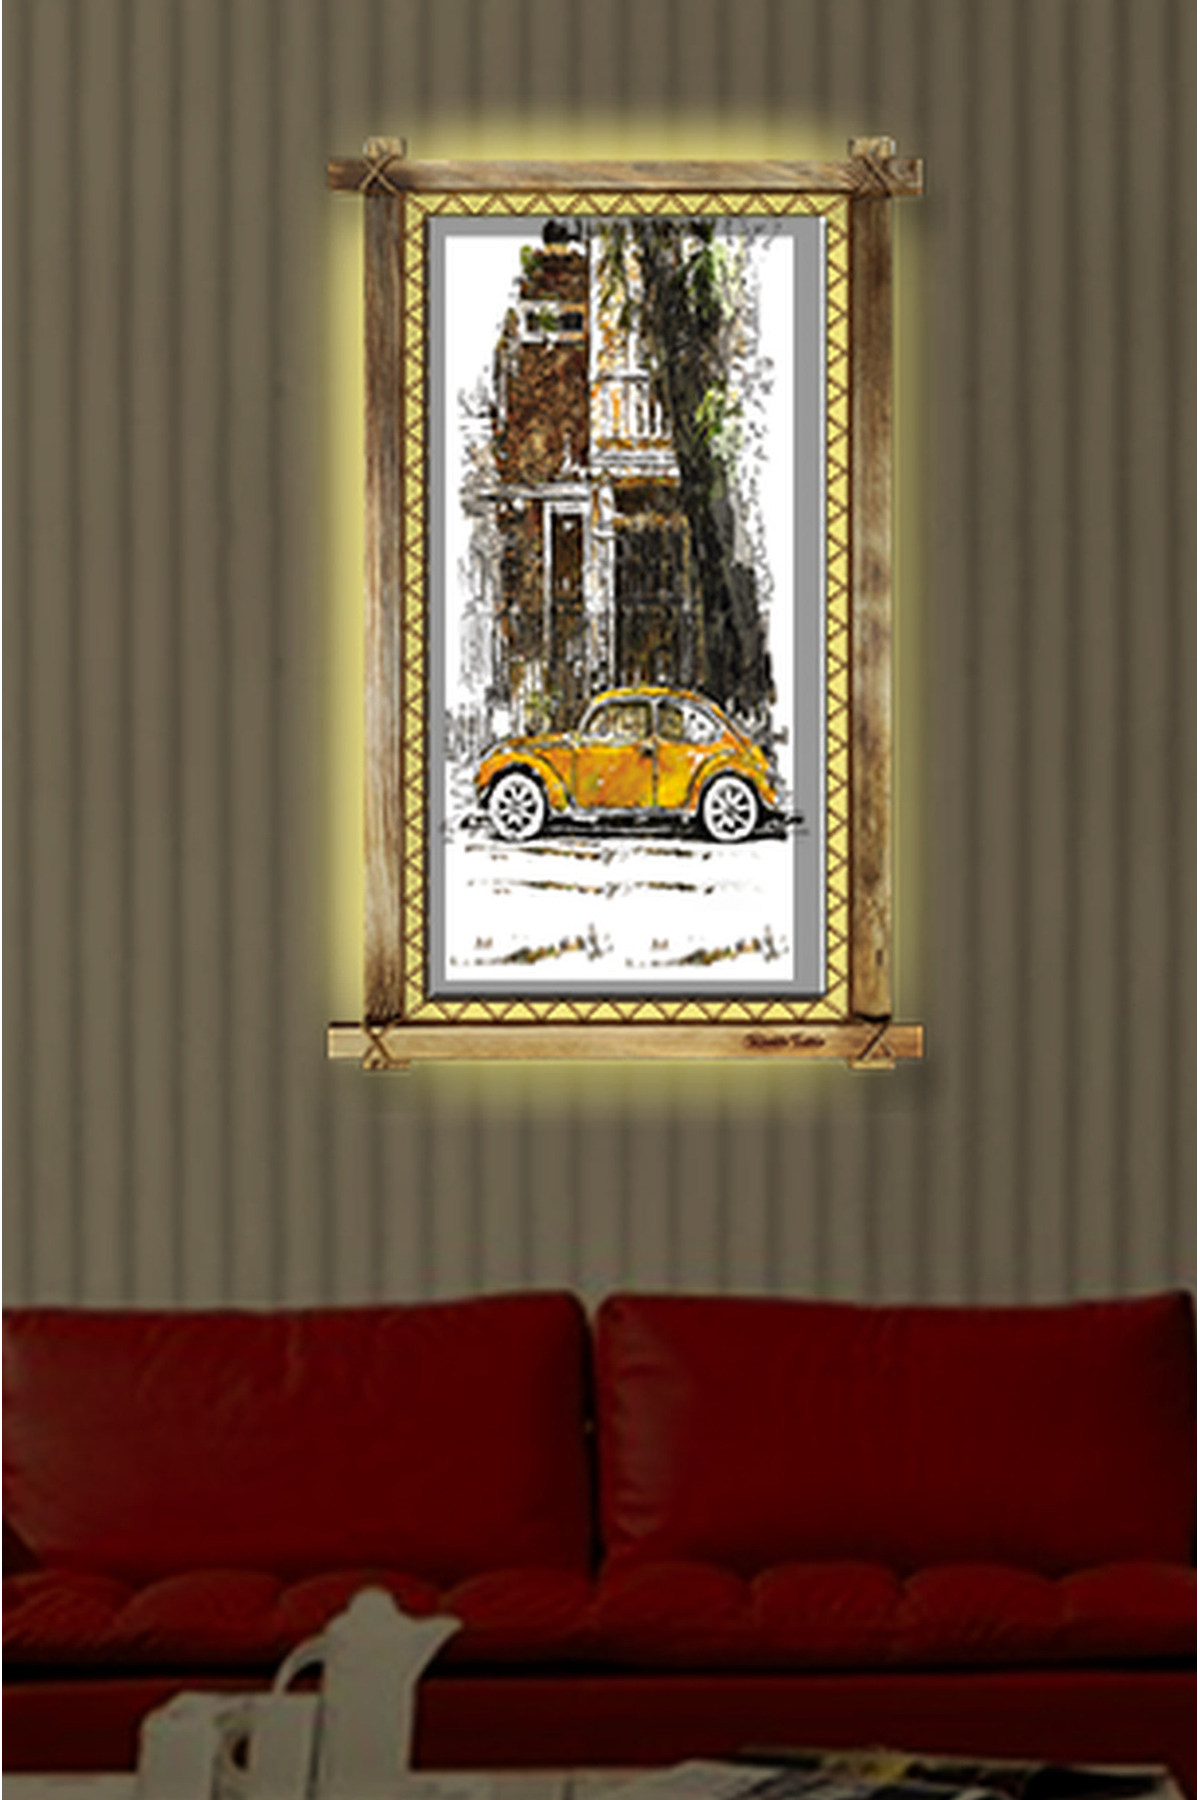 CLZ104 Sarı Araba  LED IŞIKLI RUSTİK kanvas tablo B  (96 x 66) cm